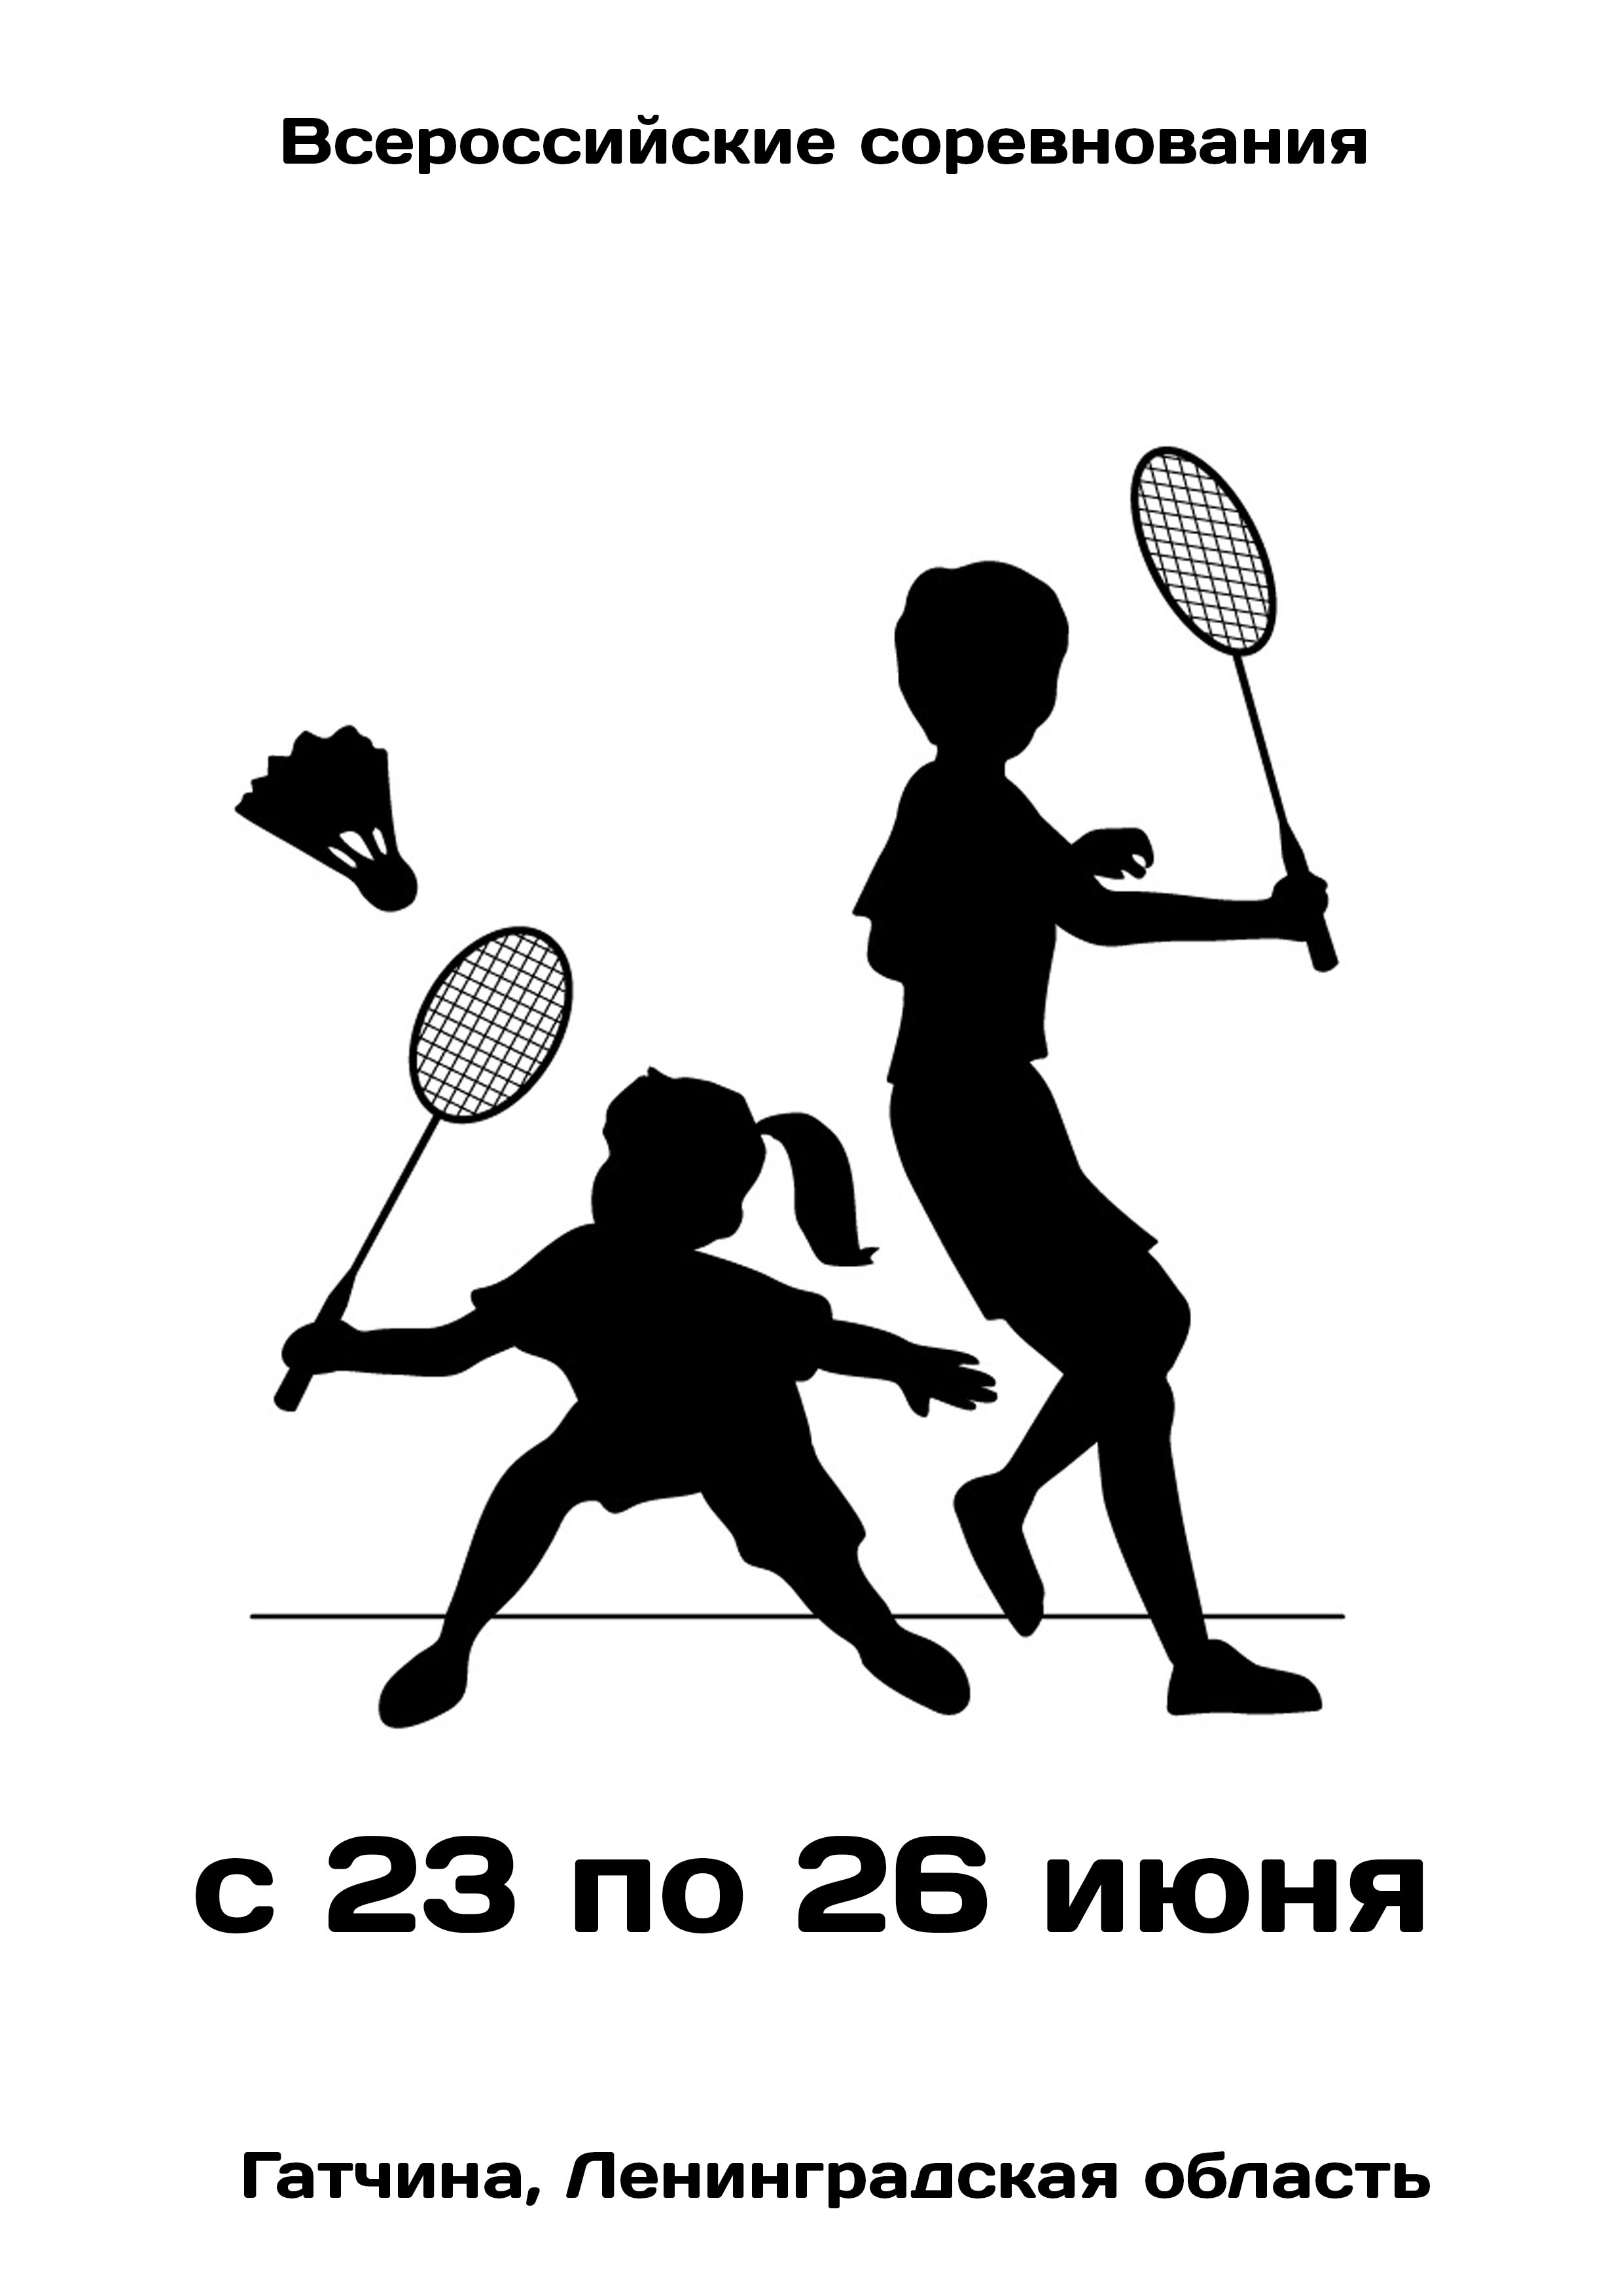 Всероссийские соревнования  по бадминтону 23  เป็นเดือนมิถุนายน
 2023  ปี
 